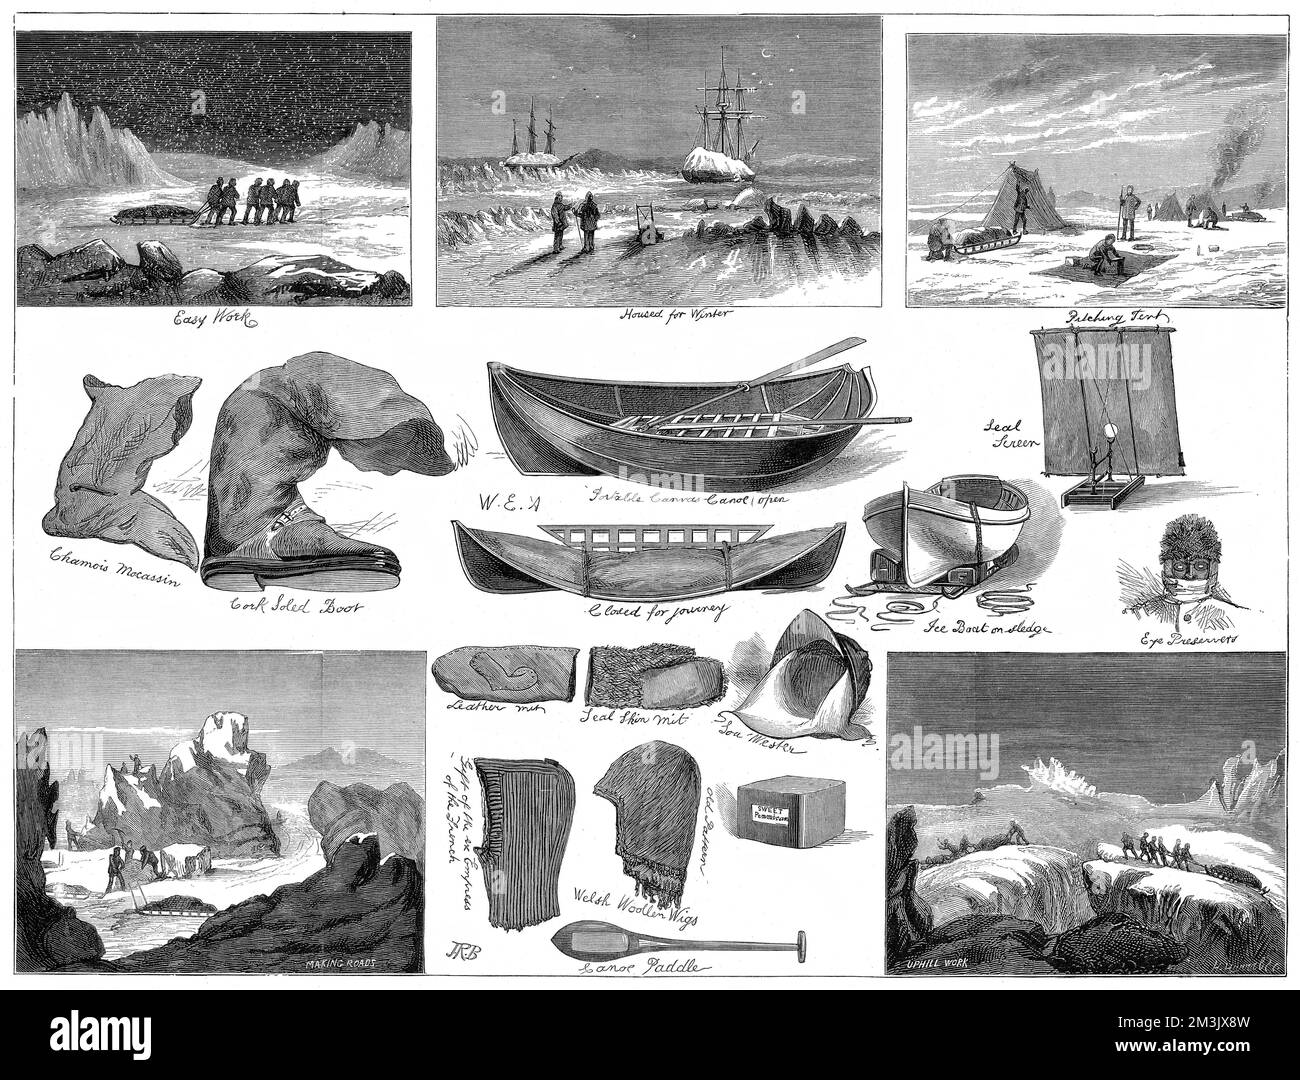 Eine Reihe von Szenen von der British Arctic Expedition von 1875-1876 und der verwendeten Ausrüstung. Die Schlittenfahrten können bei der Arbeit in den Szenen und im Zentrum gesehen werden: Schneestiefel, Canvas Kanus, Robbenhautkleidung und eine tragbare Leinwand zur Robbenjagd. Im Sommer 1875 schickte die britische Admiralität Captain George Nares mit zwei Schiffen, HMS „Alert“ und HMS „Discovery“, um den Nordpol über Smith Sound zu erreichen. Obwohl der Versuch erfolglos war, wurde ein neuer Rekord für den „äußersten Norden“ aufgestellt, die Küsten Grönlands und der Insel Ellesmere wurden kartiert und viele wissenschaftliche Daten wurden in gath erfasst Stockfoto